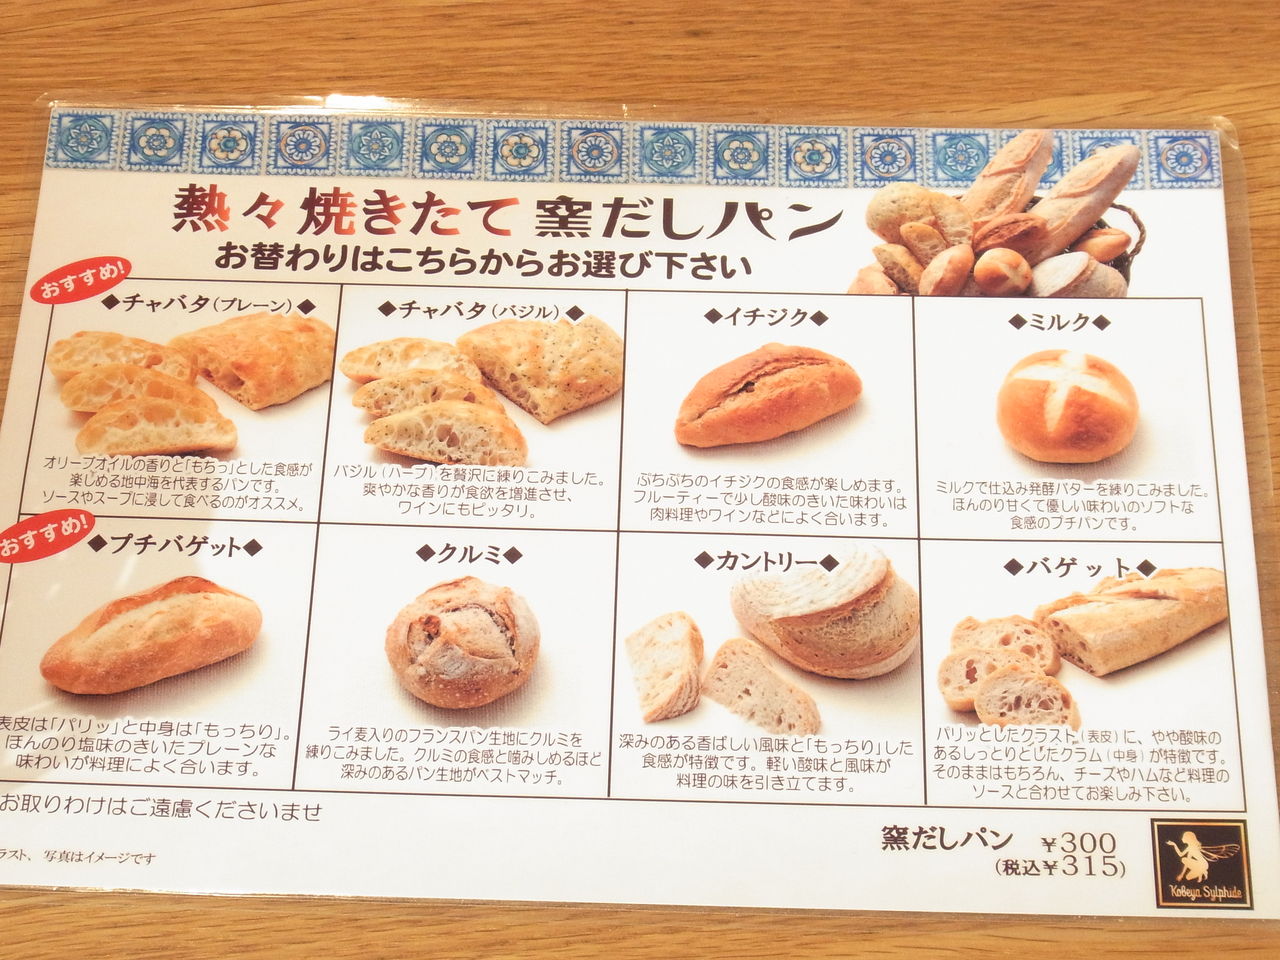 ルクア大阪 神戸屋シルフィー でパン食べ放題ランチ 猫あねきのお腹プクプク美味しいもん日記